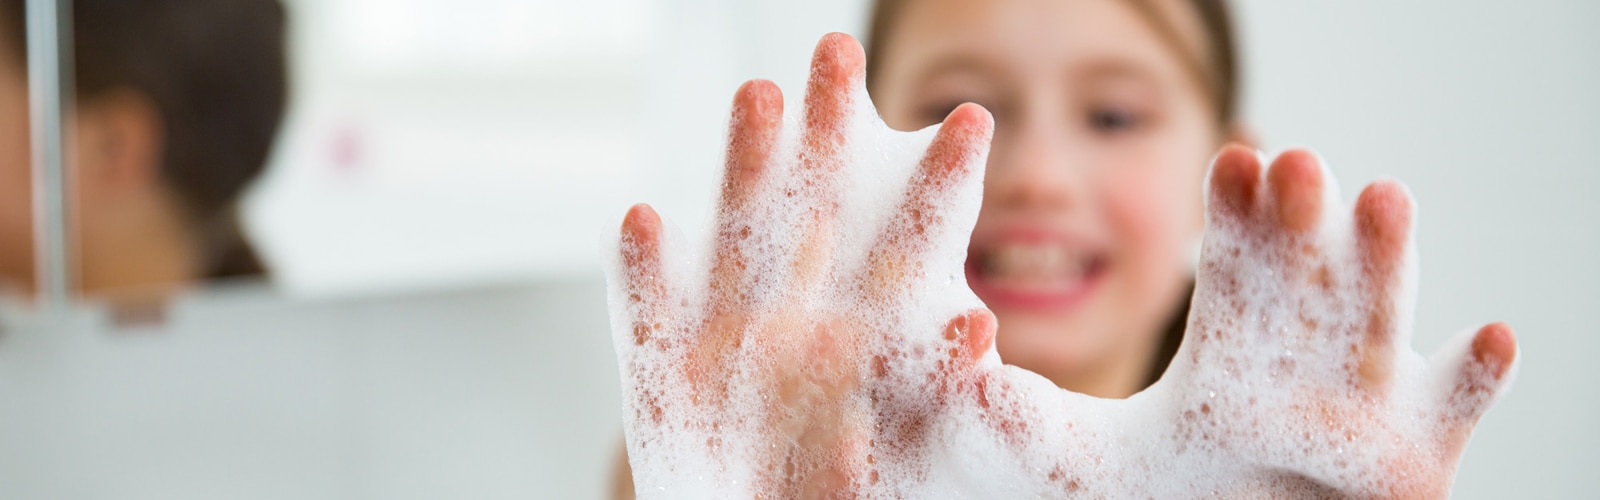 Manos de niña con espuma de jabón